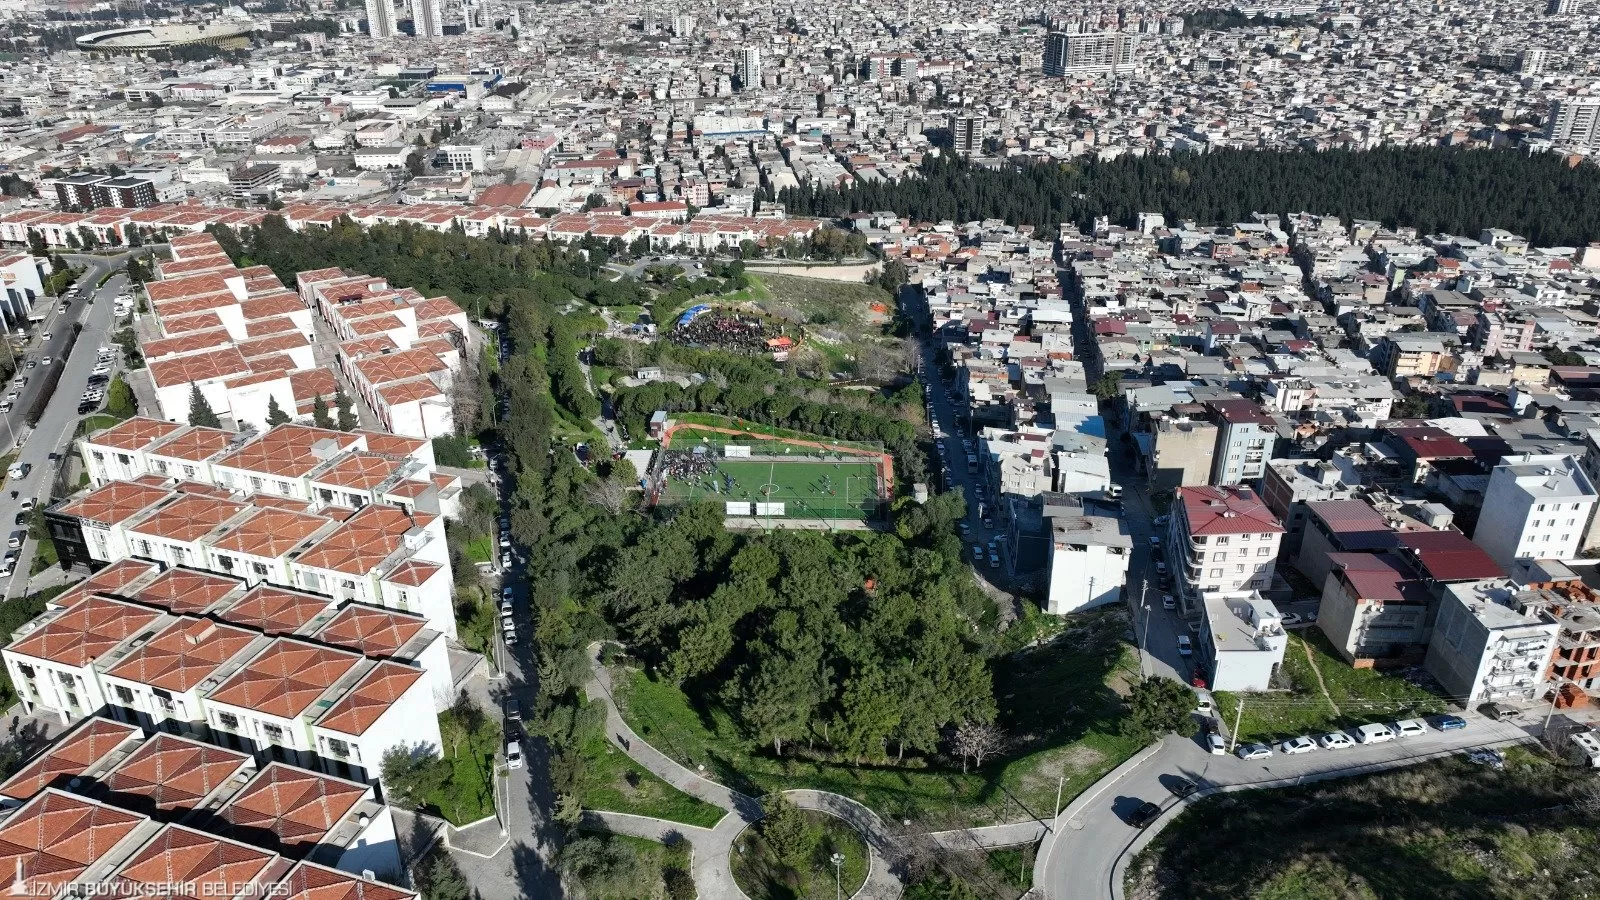 İzmir Büyükşehir Belediyesi, Bornova'da 60 bin metrekarelik alanda Meriç Yaşayan Parkı'nı hizmete açtı.